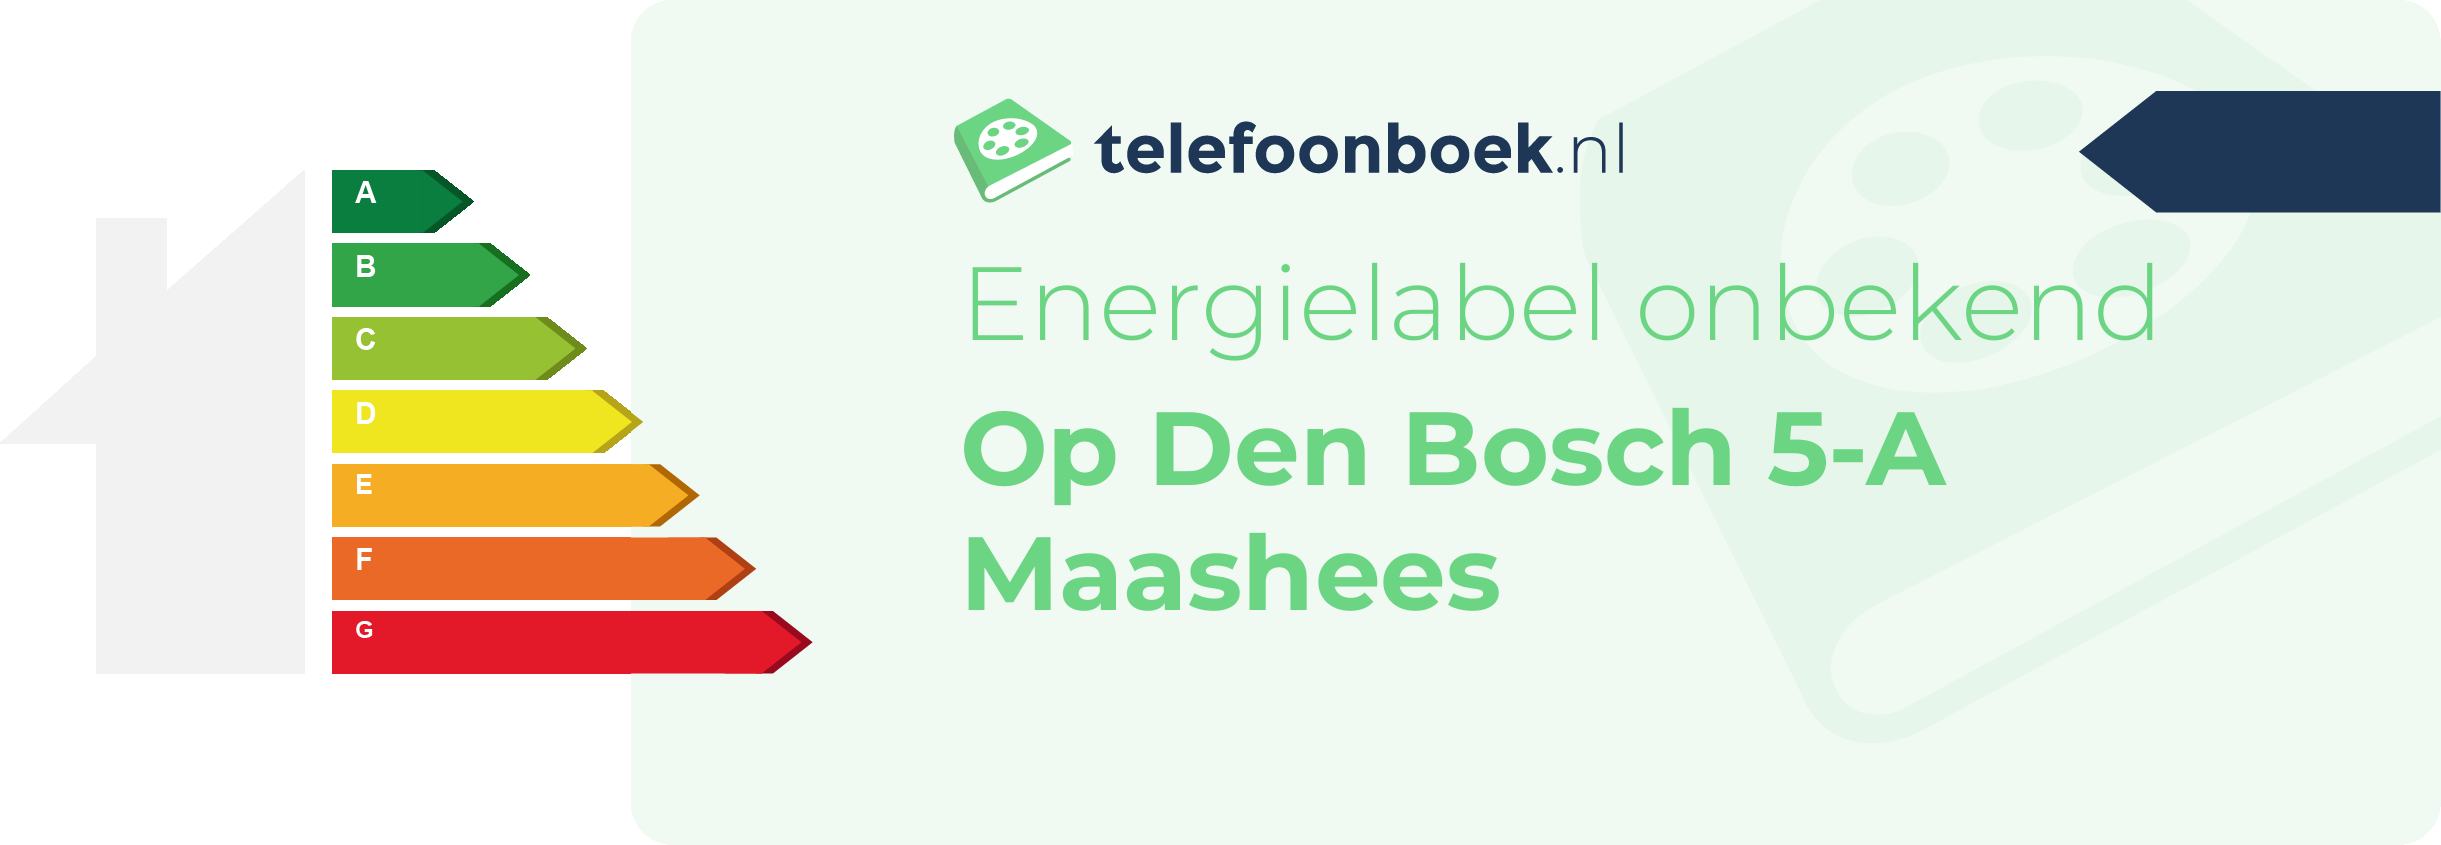 Energielabel Op Den Bosch 5-A Maashees